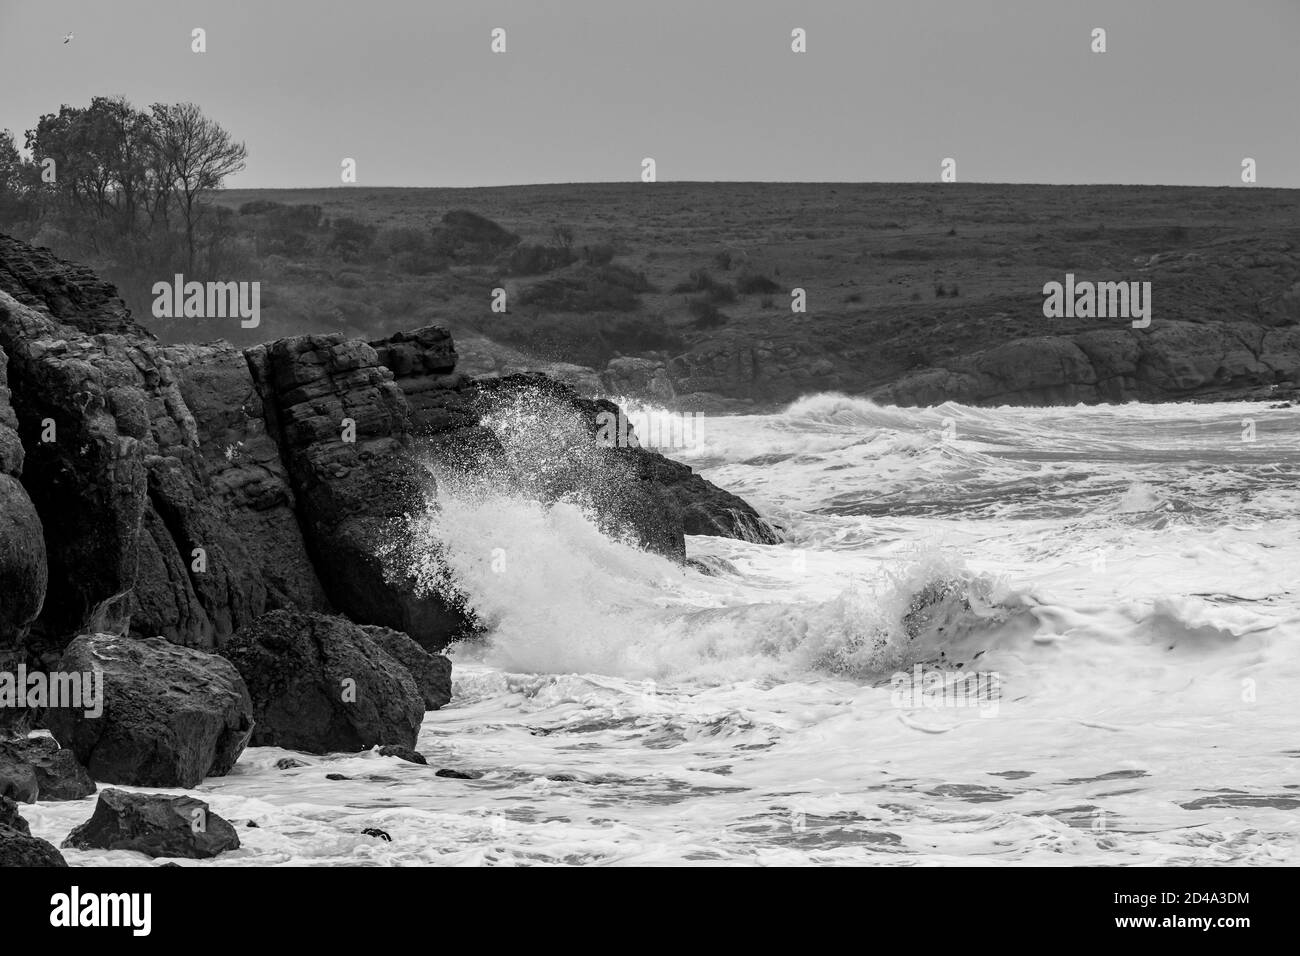 Sombre moody paysage d'automne paysage marin, orageux Mer Noire, Bulgarie. Vagues de mer éclaboussant et temps froid et venteux. Impression noir et blanc Banque D'Images